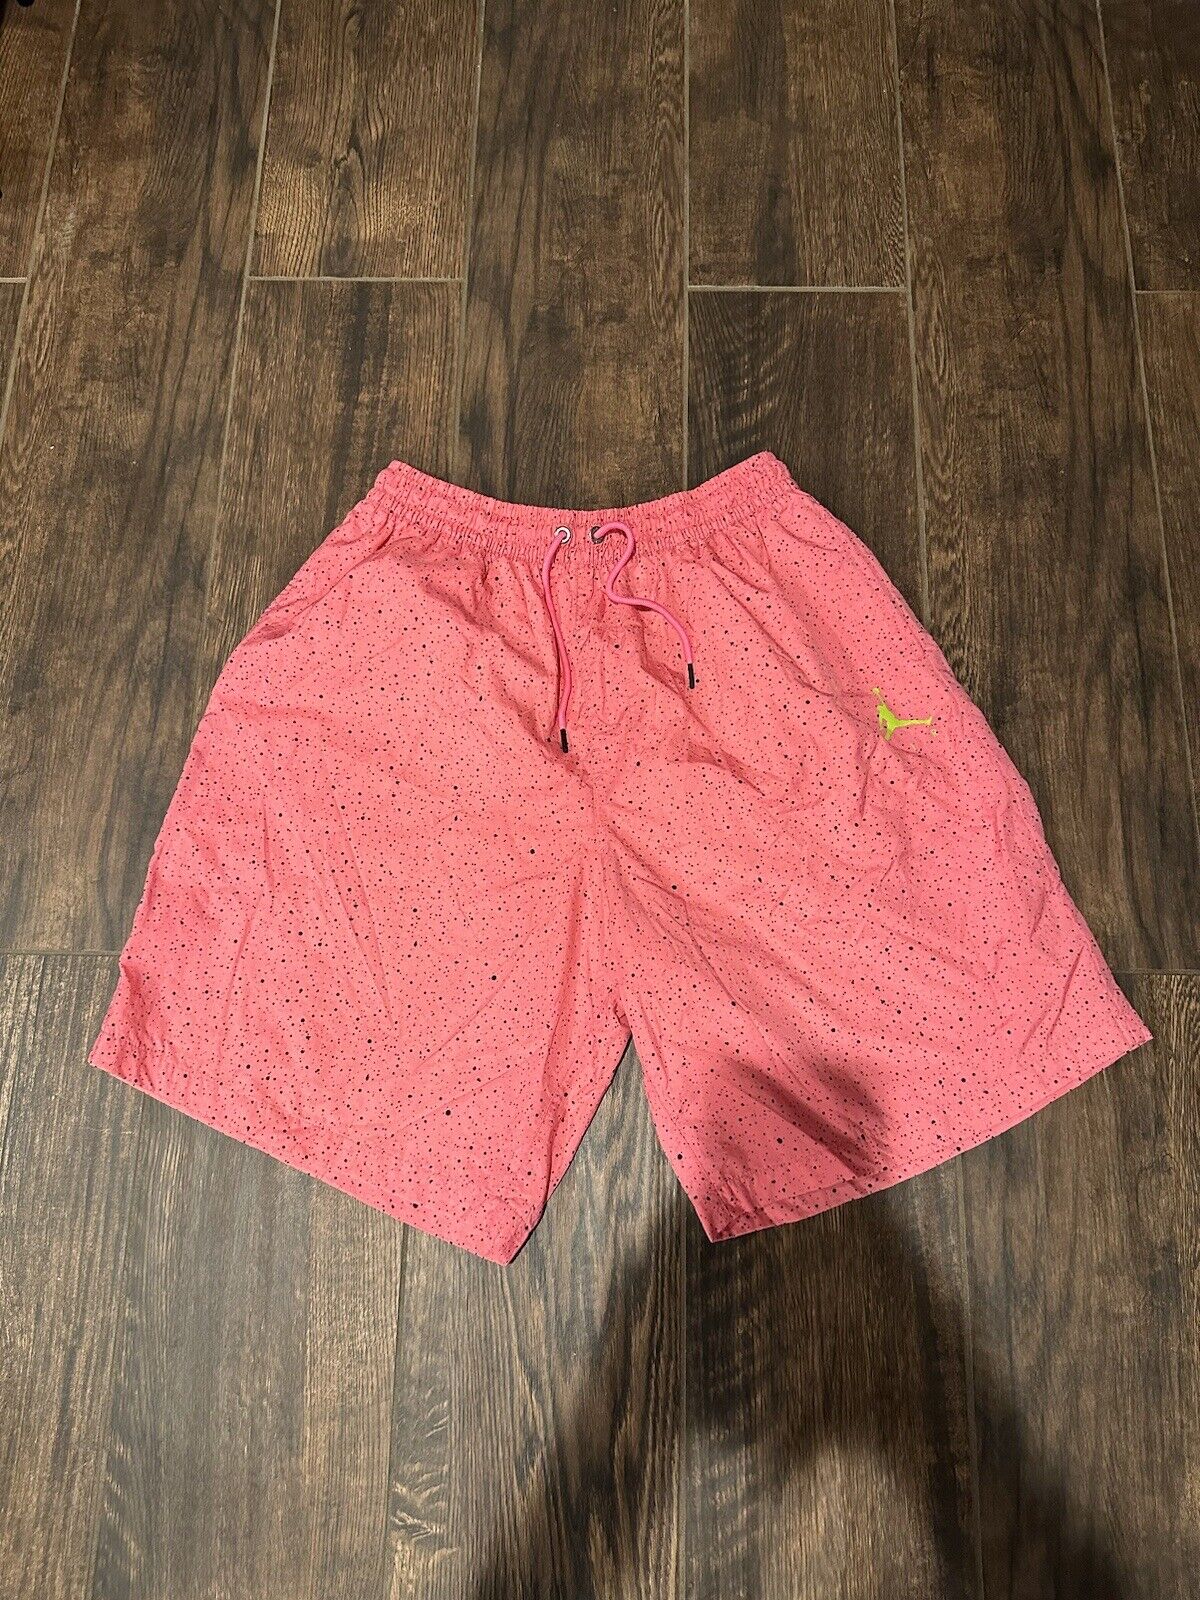 Vintage Nike Air Jordan Pink Splatter shorts Size… - image 1